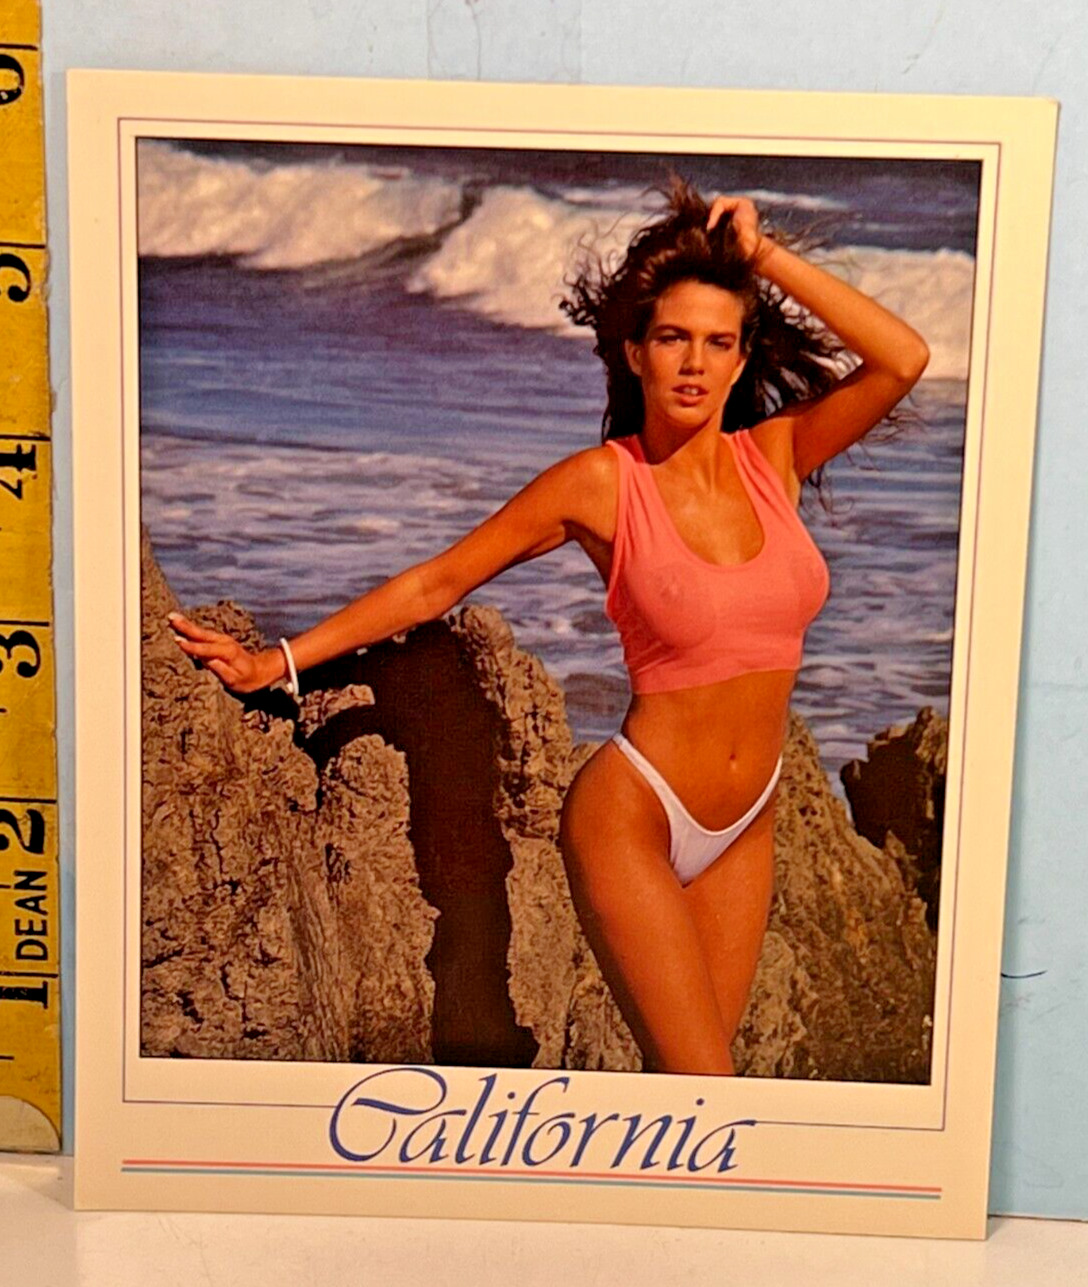 1990 Gold Coast Collection Pinup Cheesecake Postcard: California Yellow Bikini